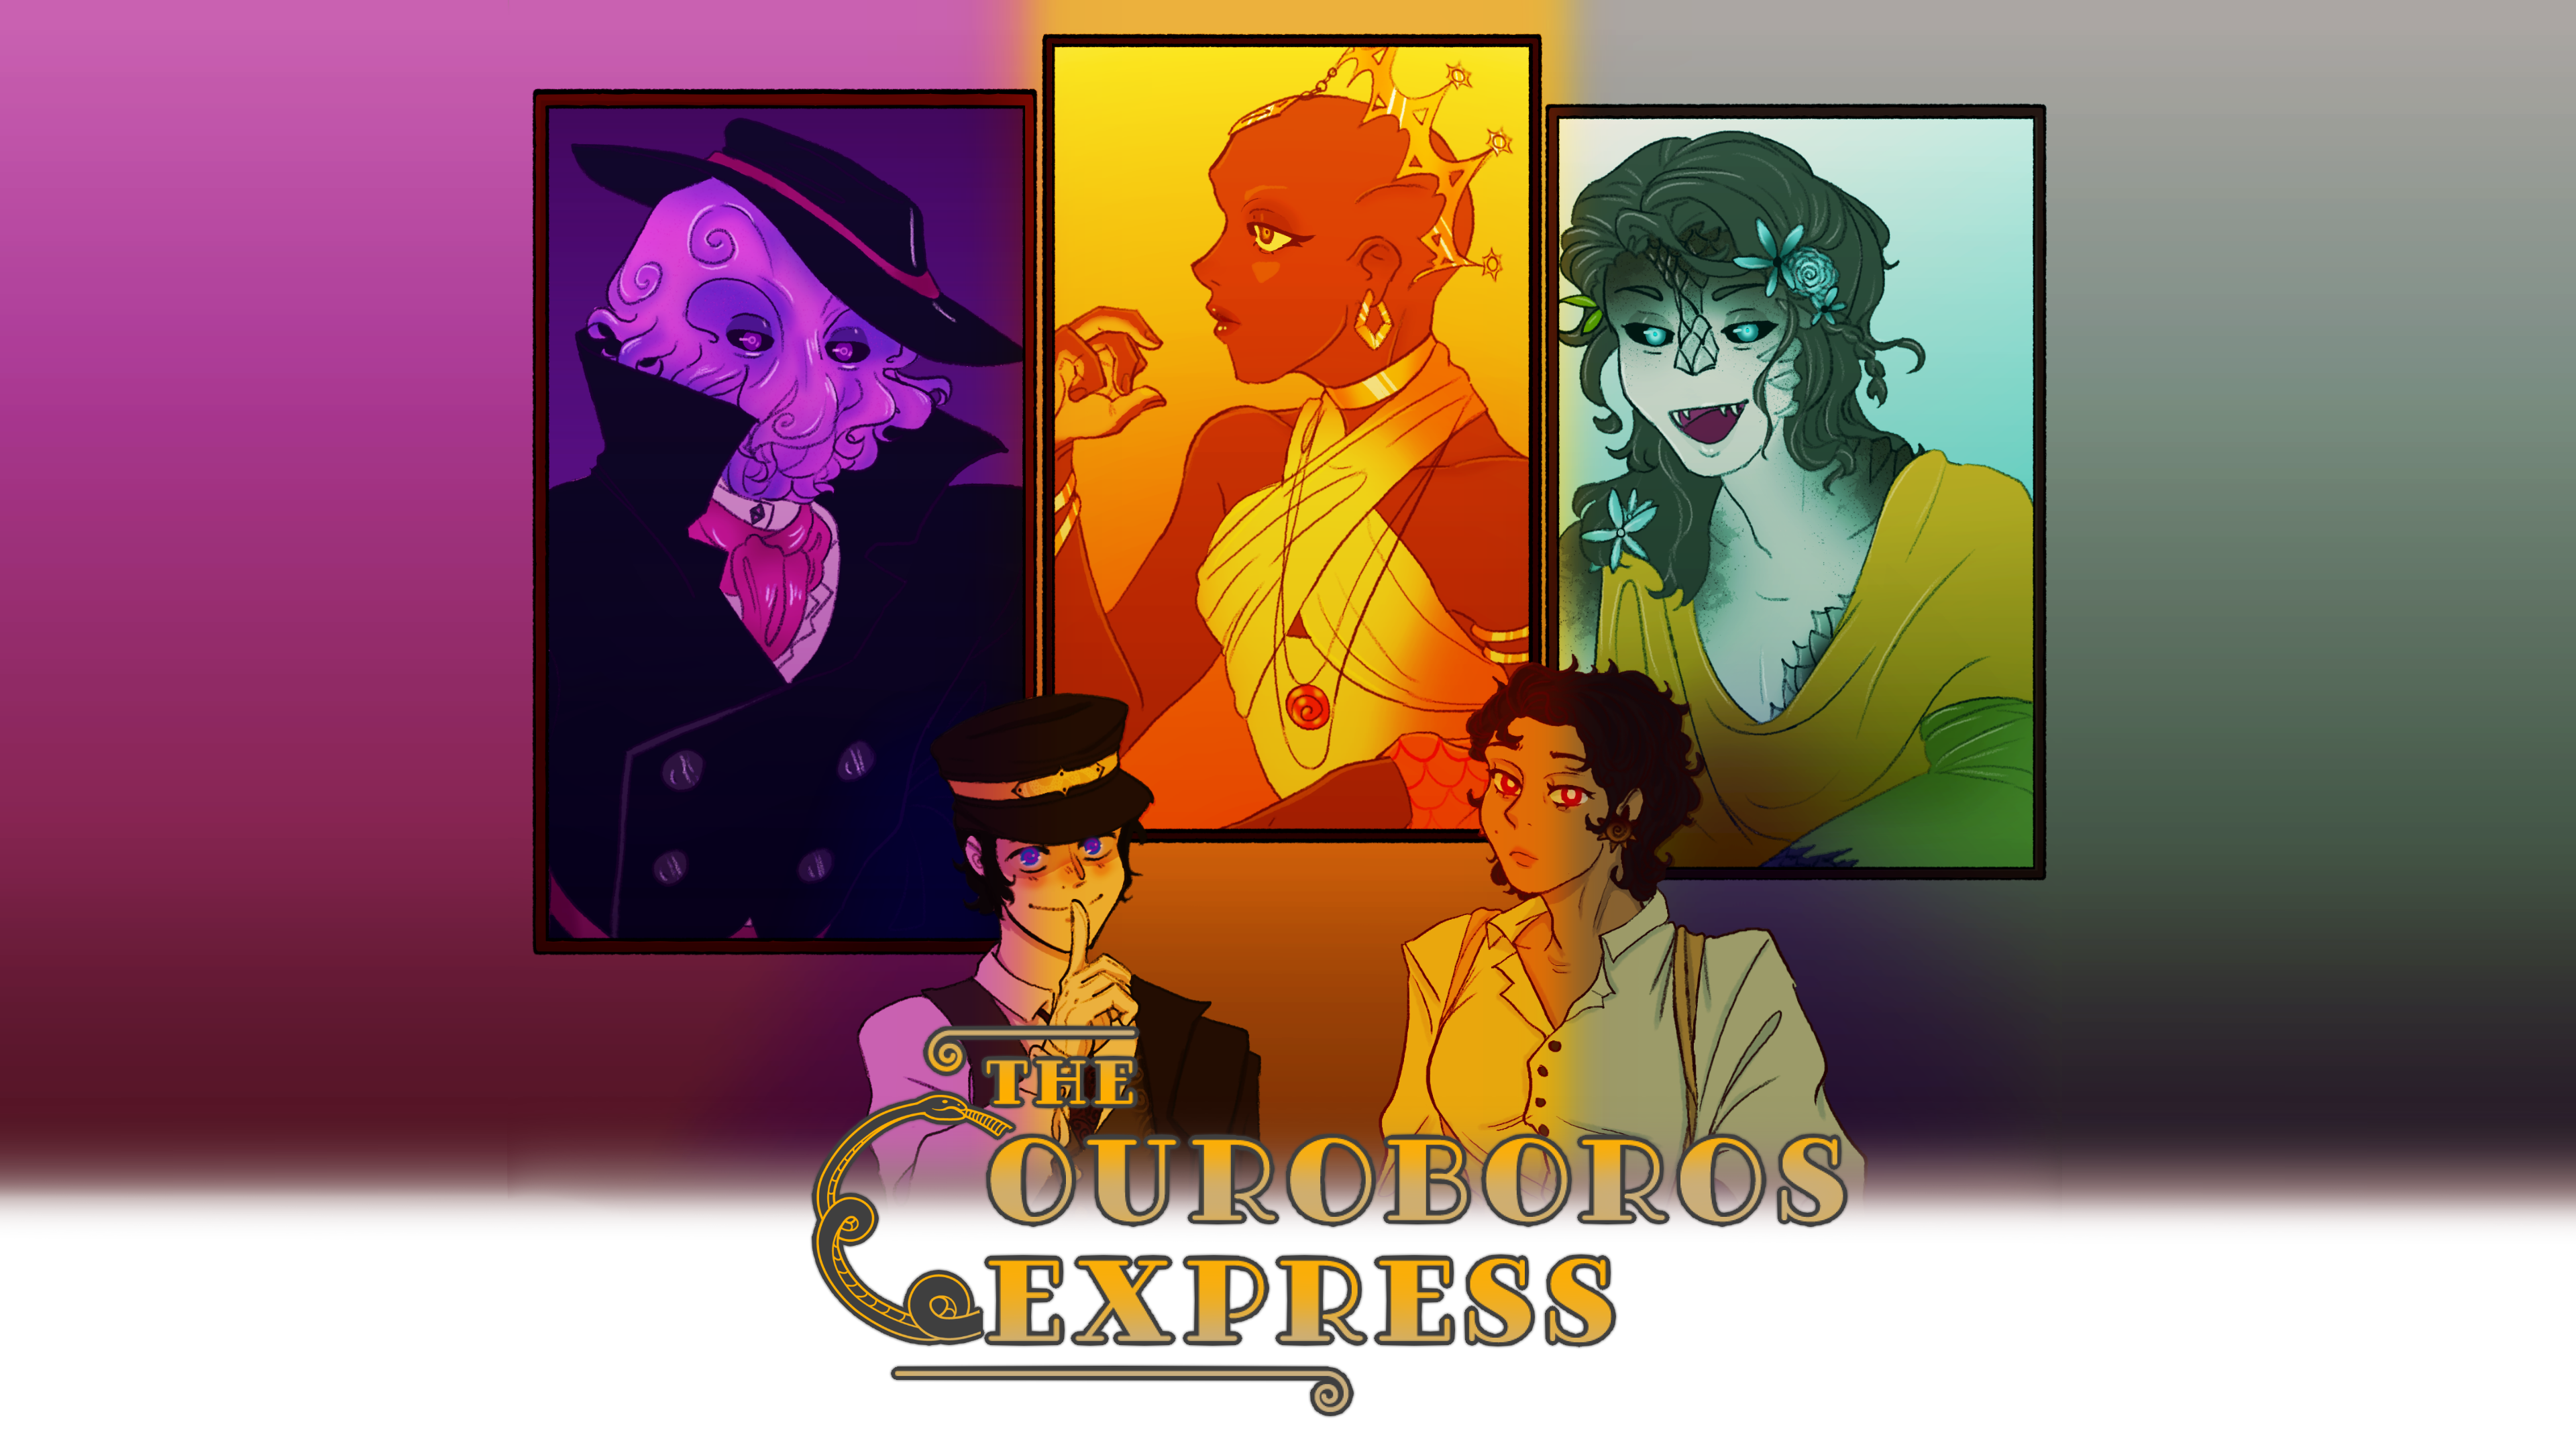 The Ouroboros Express